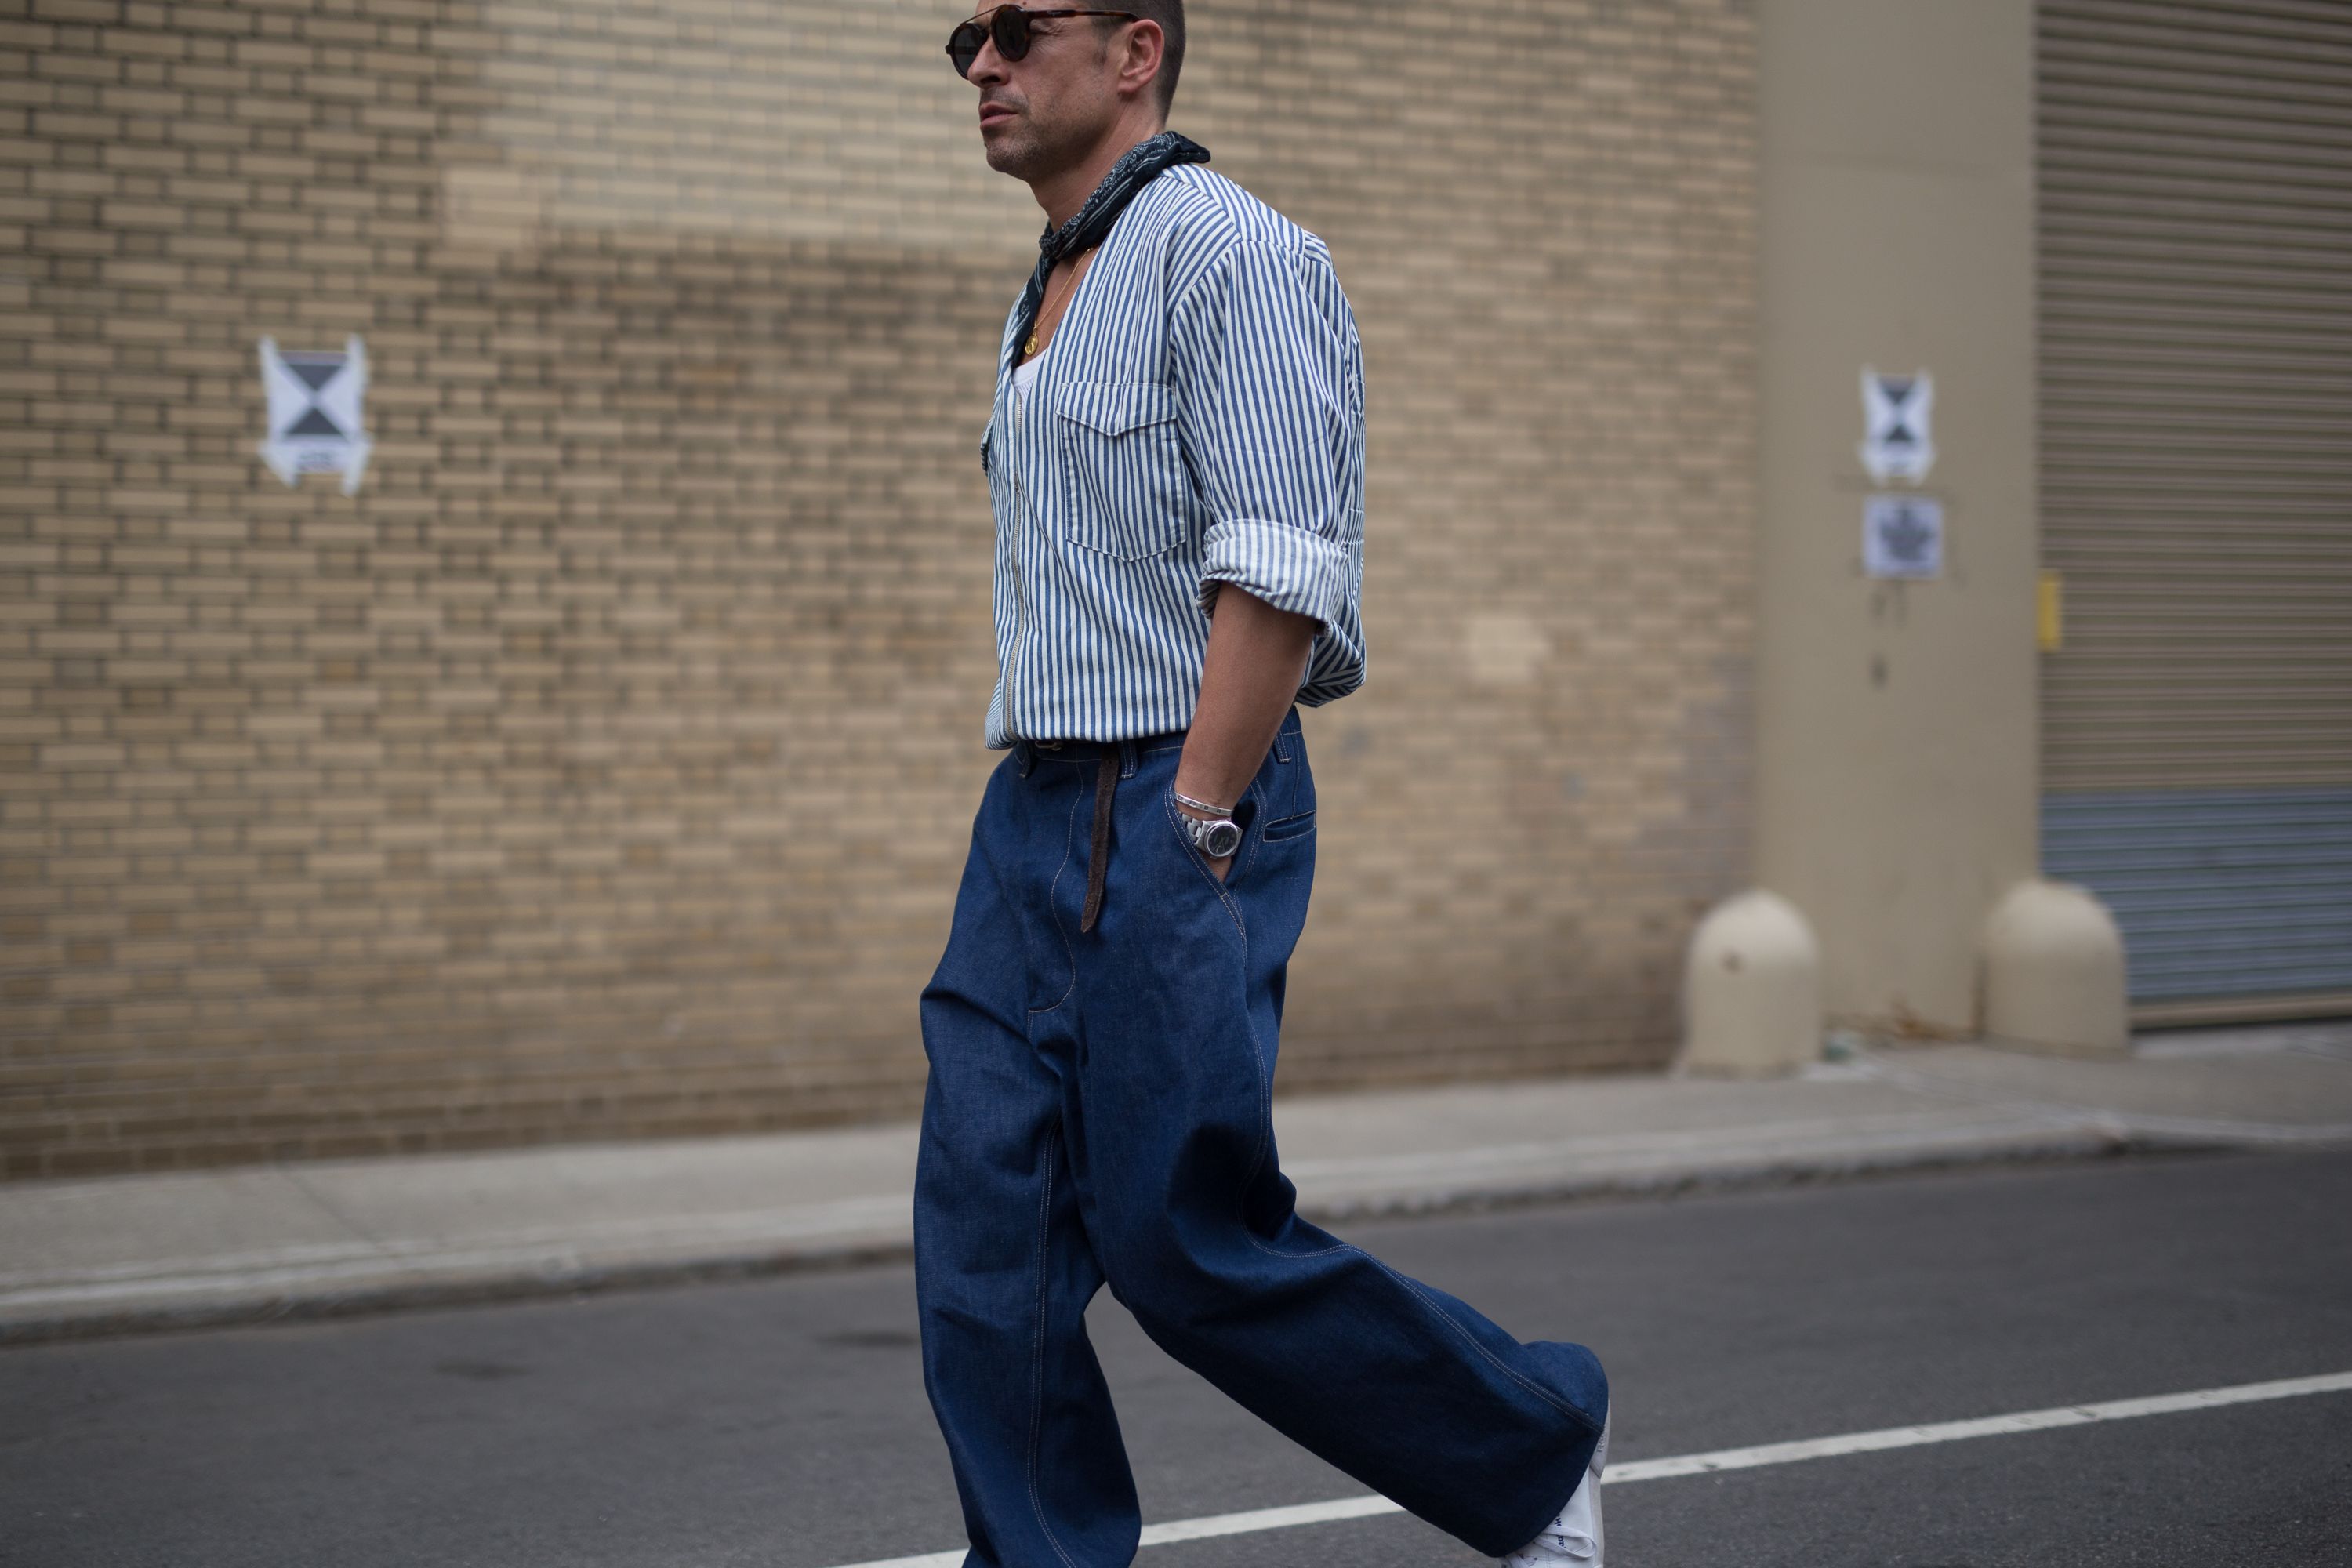 Pantalón blanco para hombre de Zara: con qué combinarlo en verano